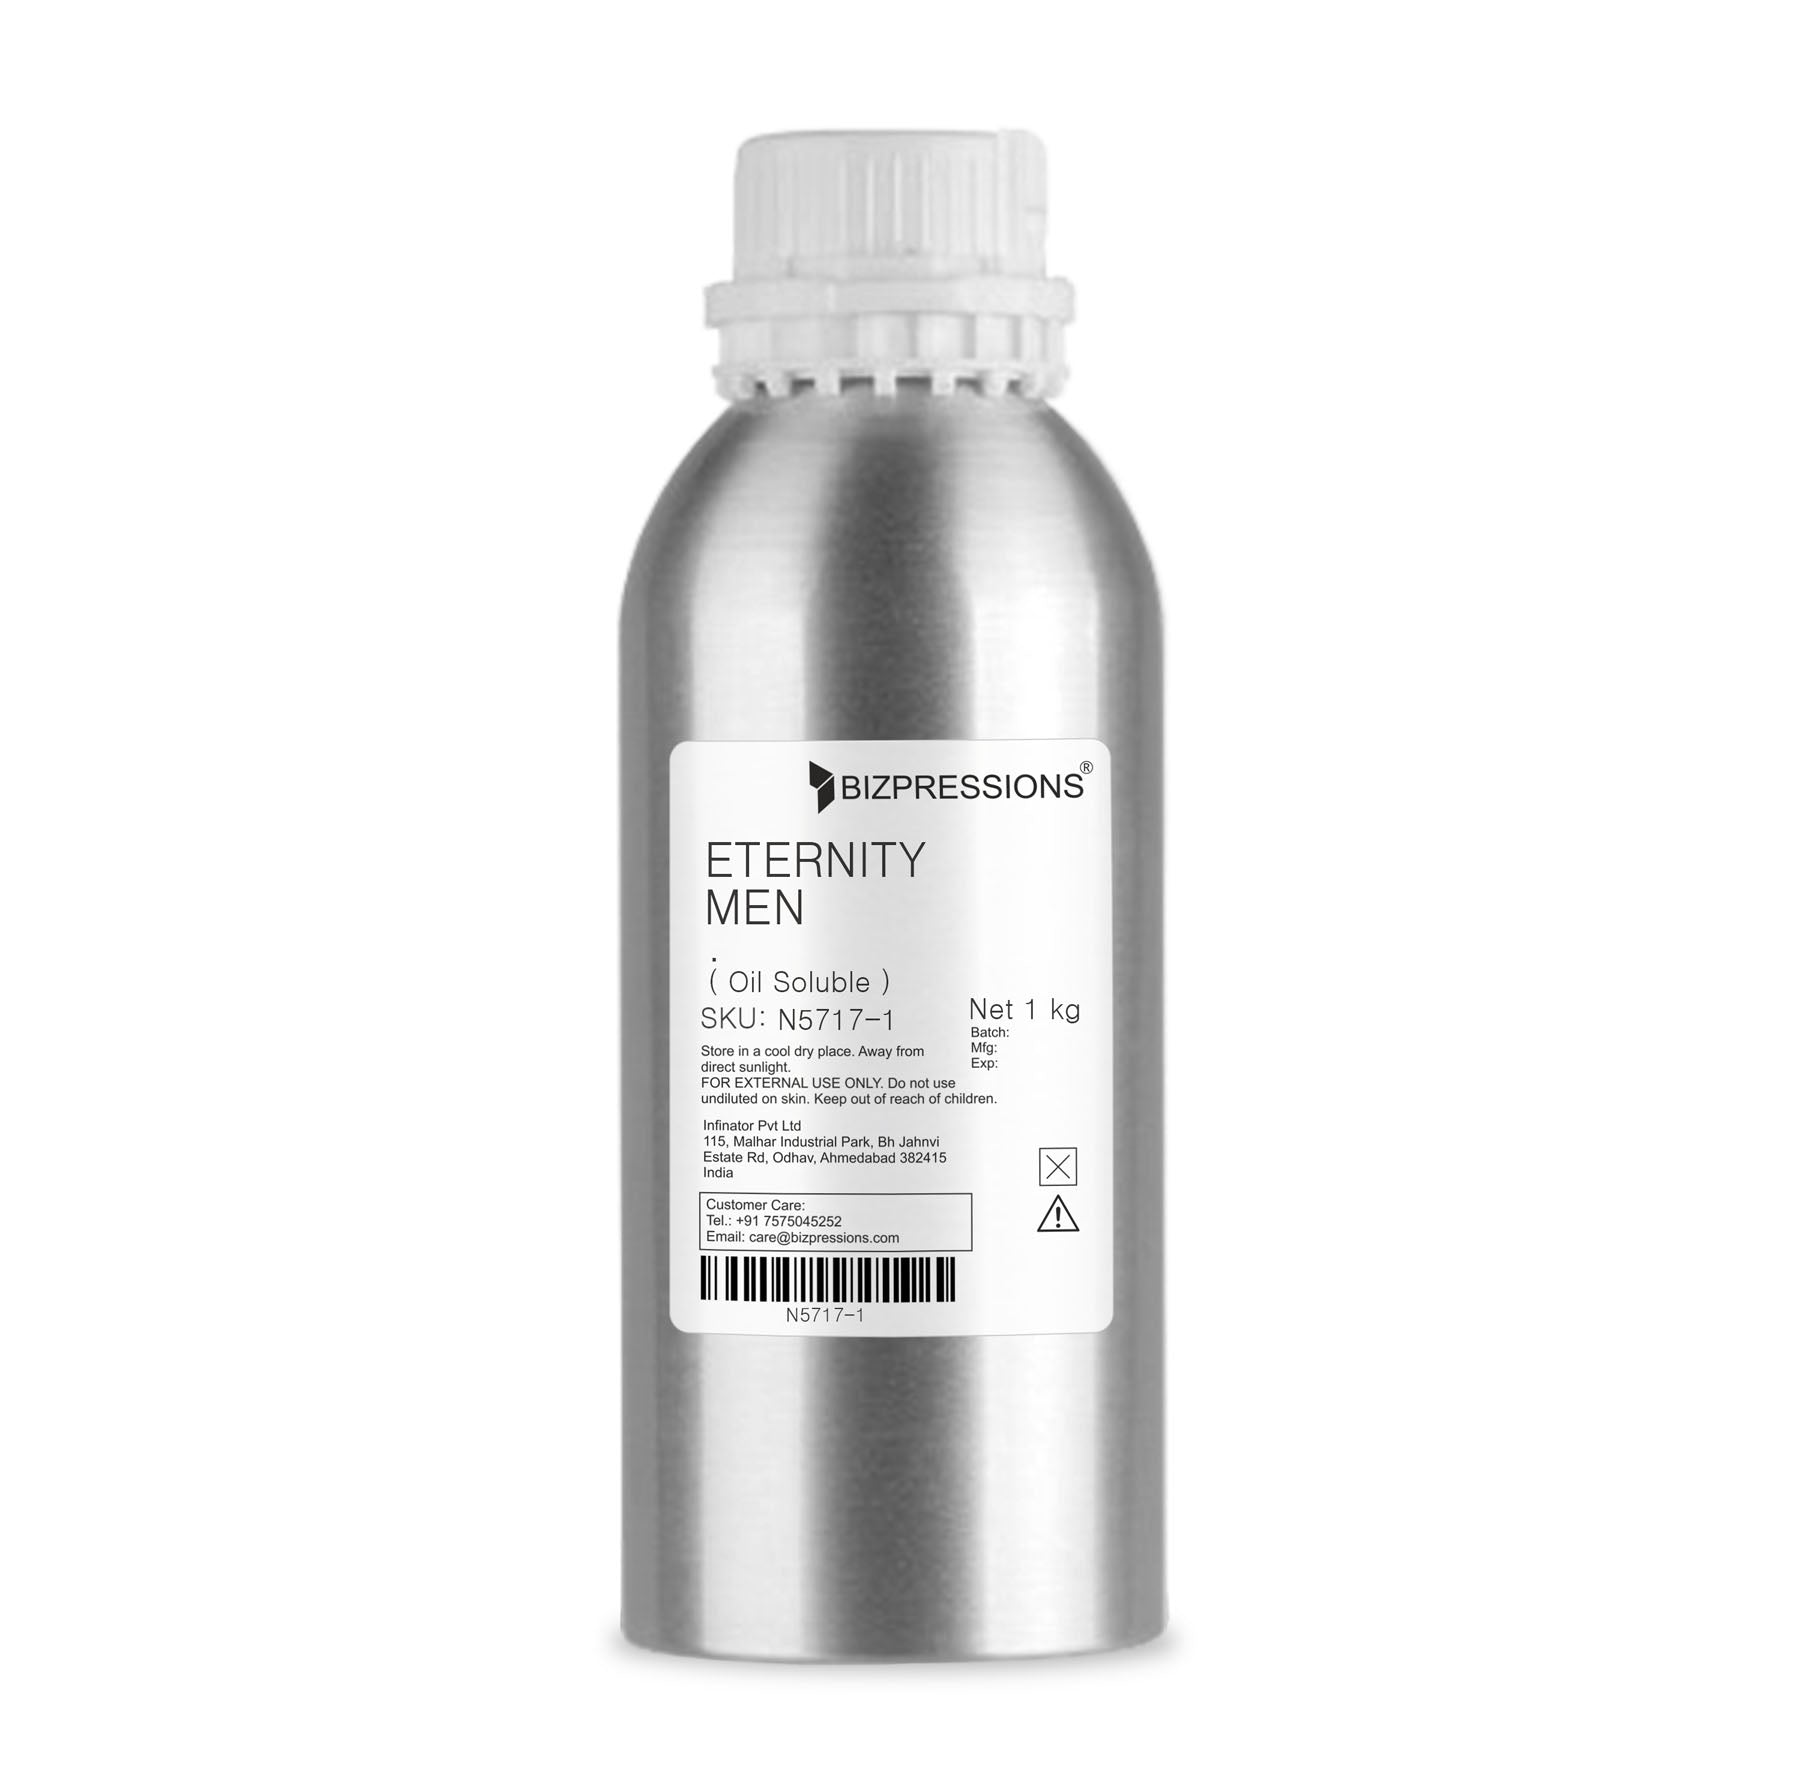 ETERNITY MEN - Fragrance ( Oil Soluble ) - 1 kg